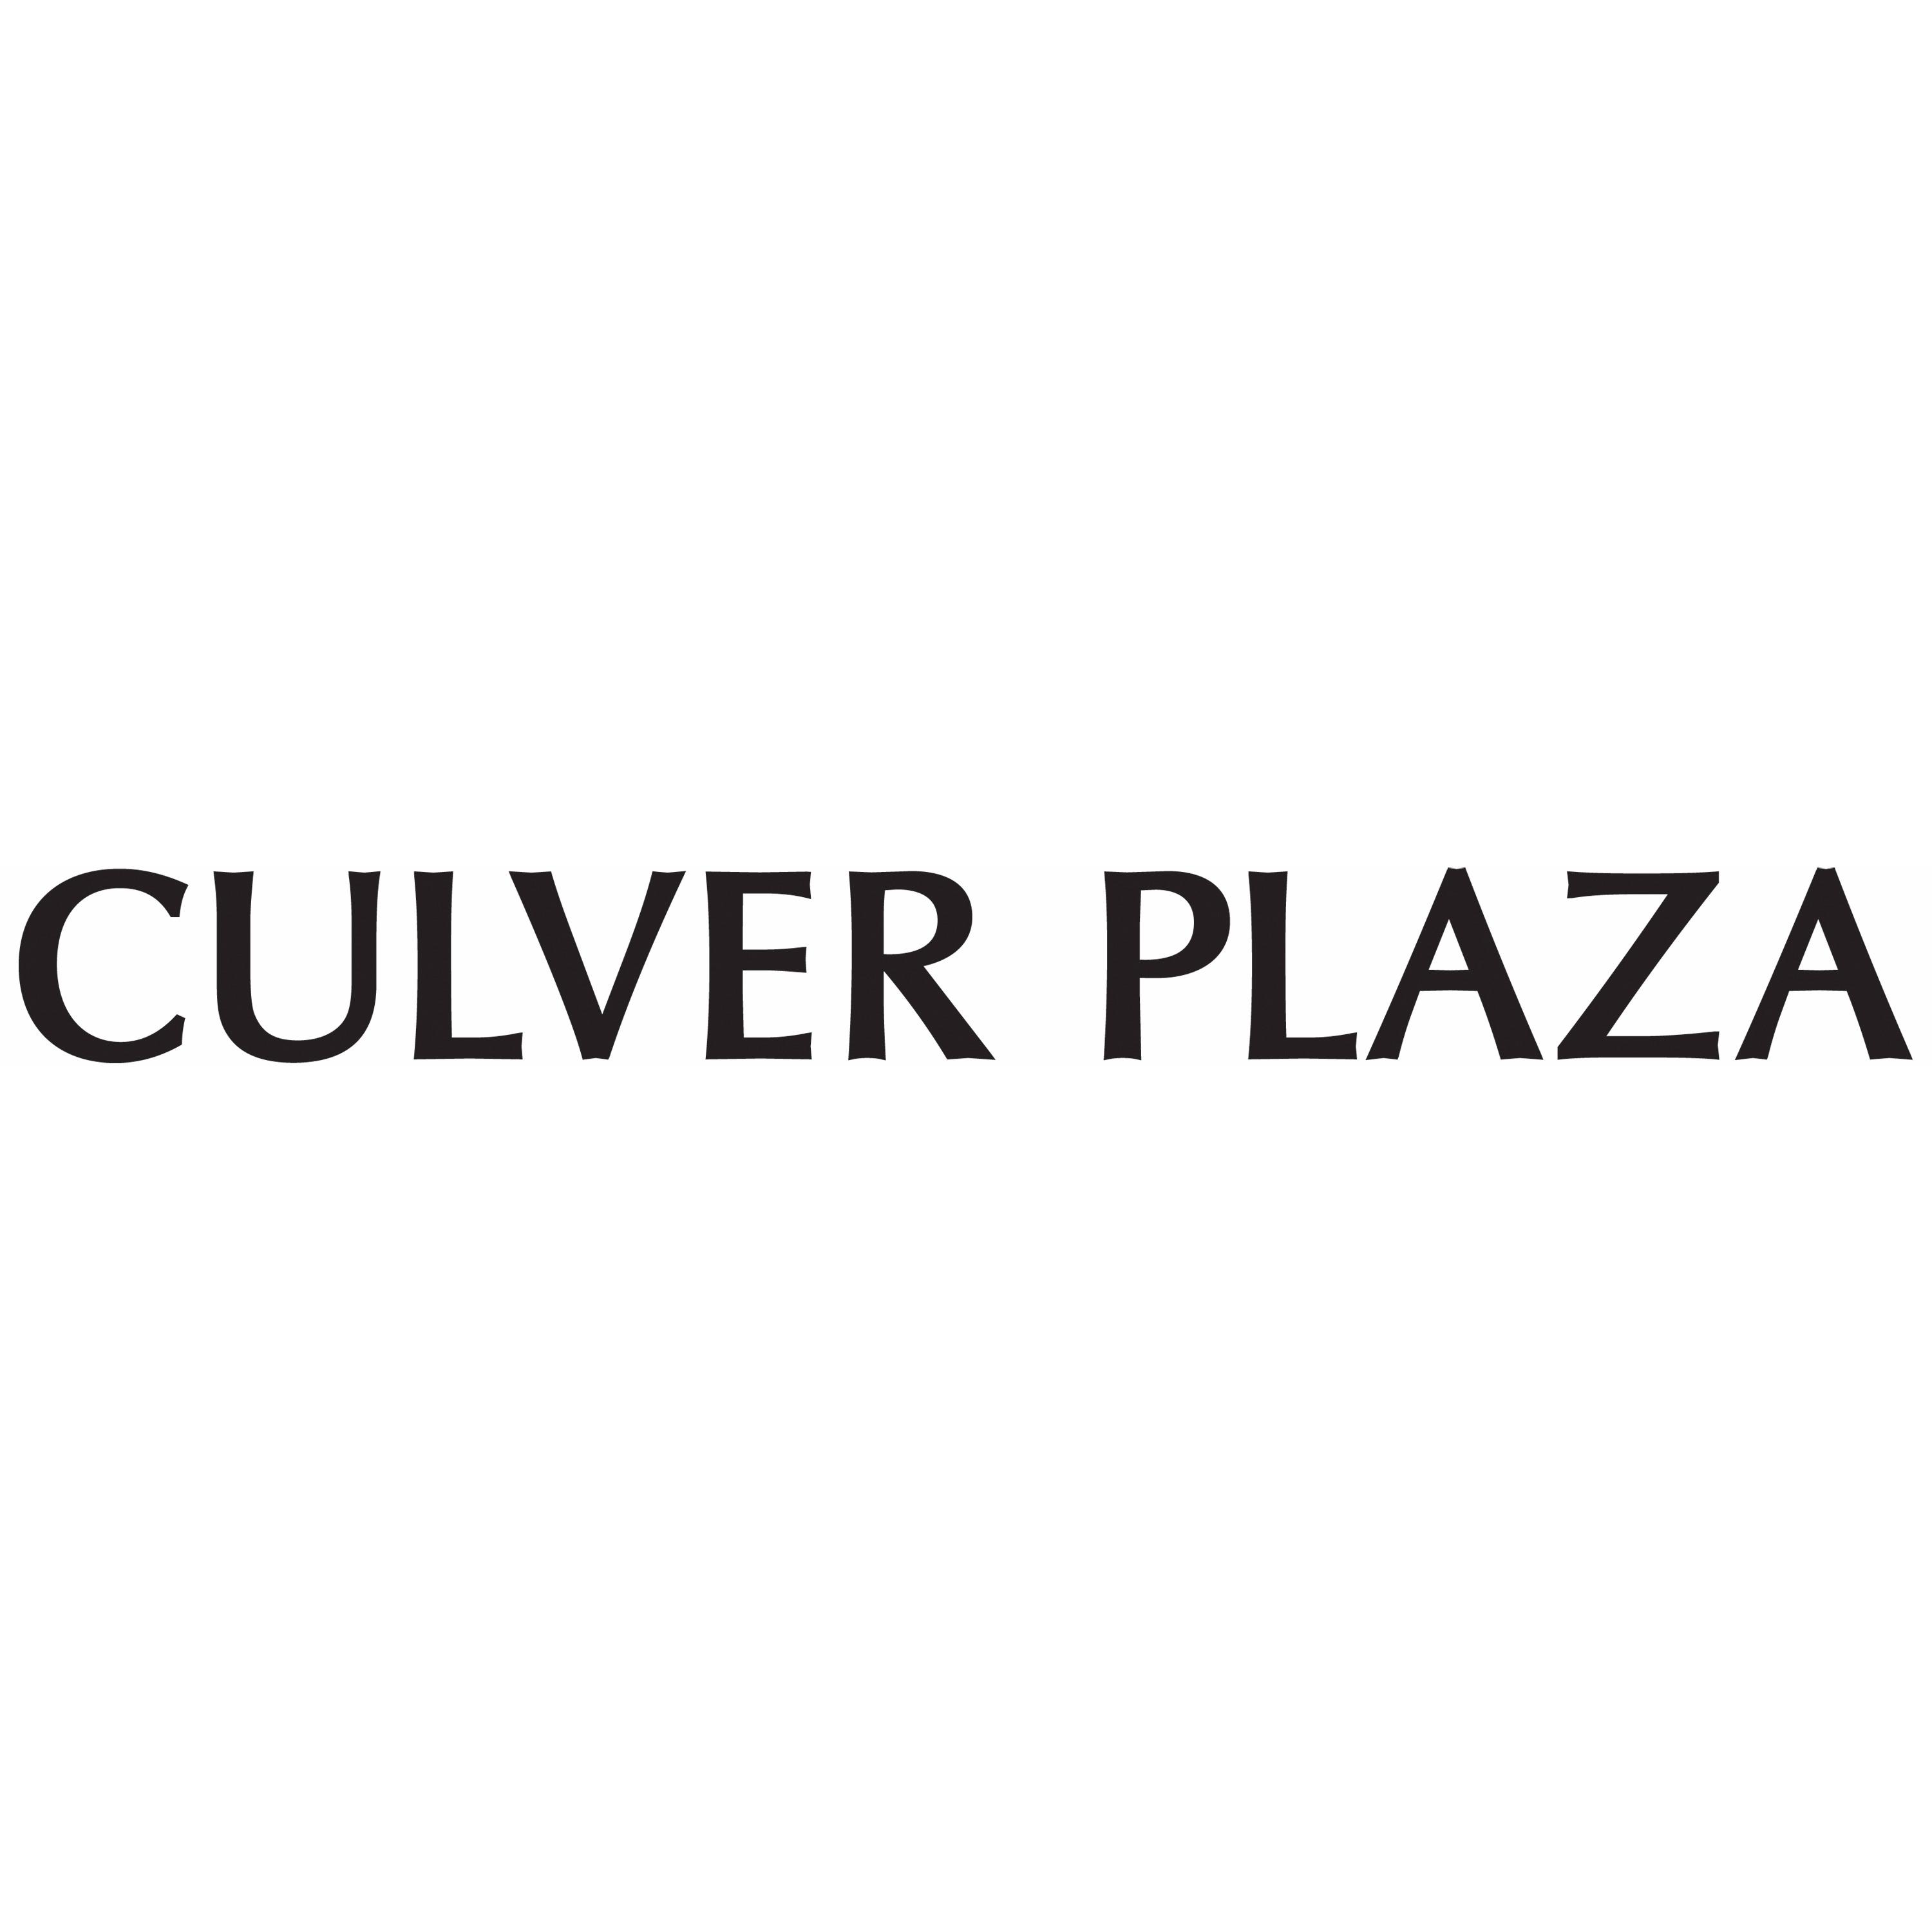 Culver Plaza - Irvine, CA 92604 - (949)720-3100 | ShowMeLocal.com